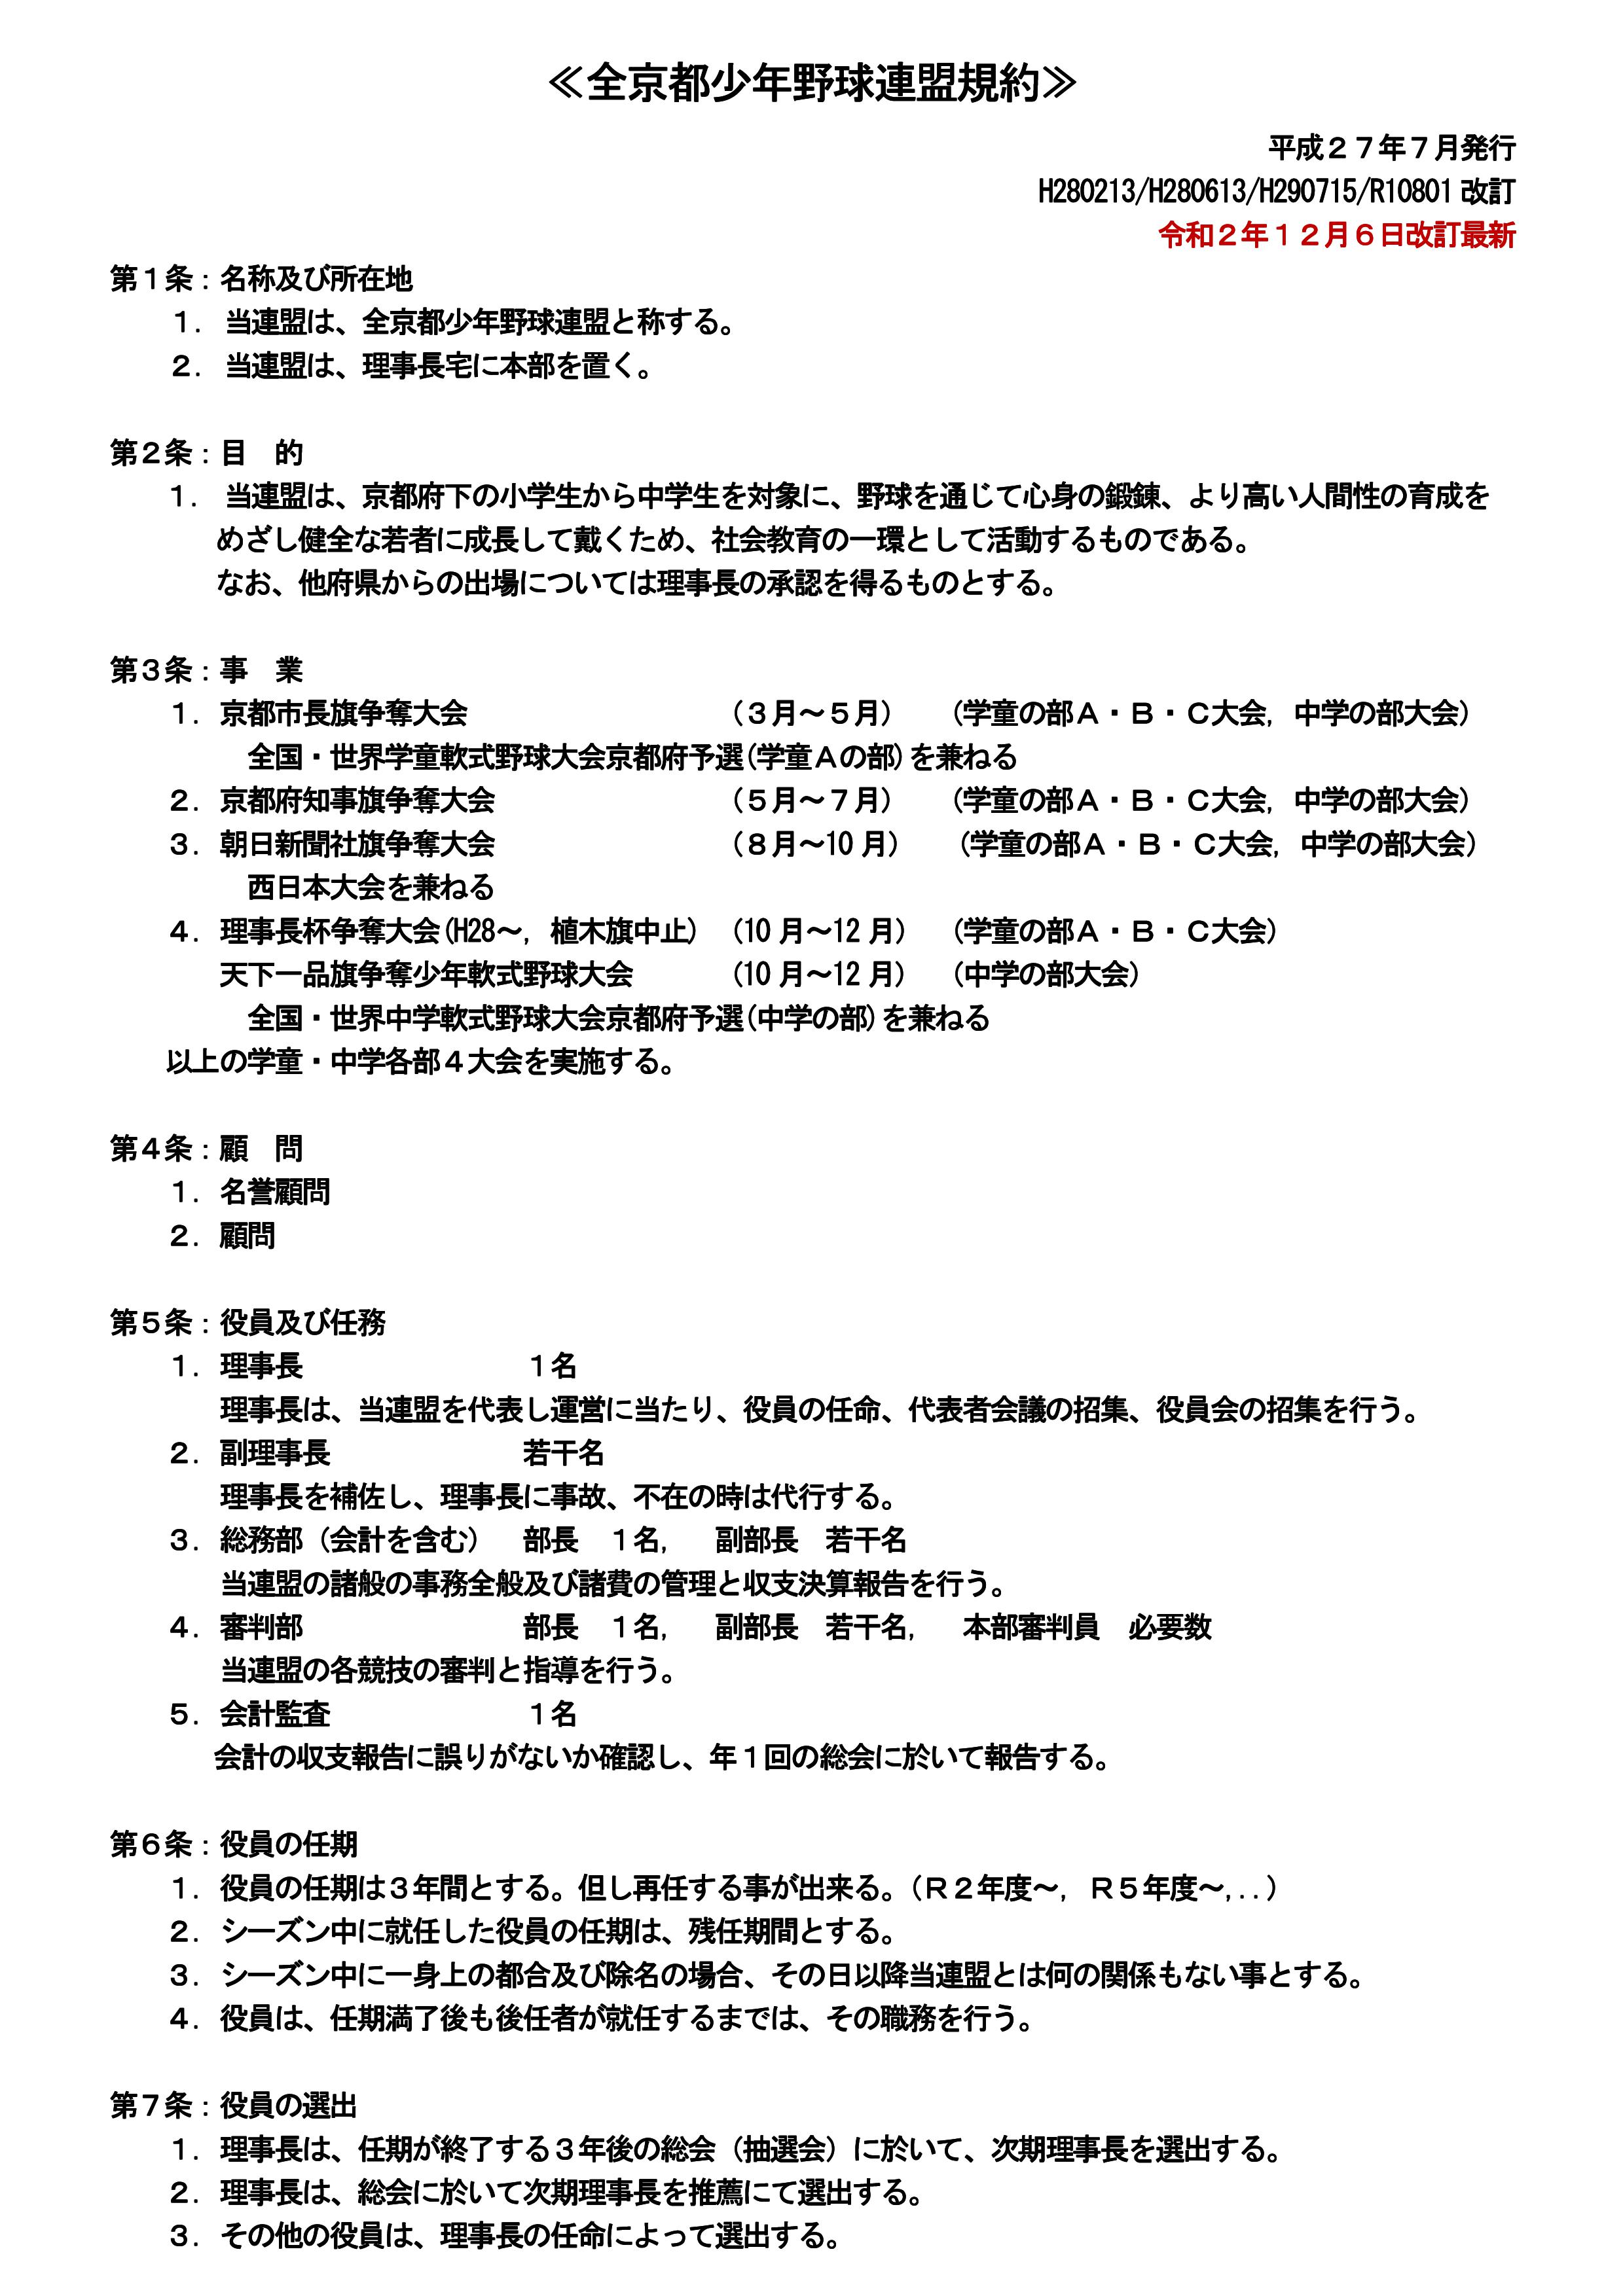 全京都少年野球連盟規約　2020.01.01改訂(案)-01.jpg